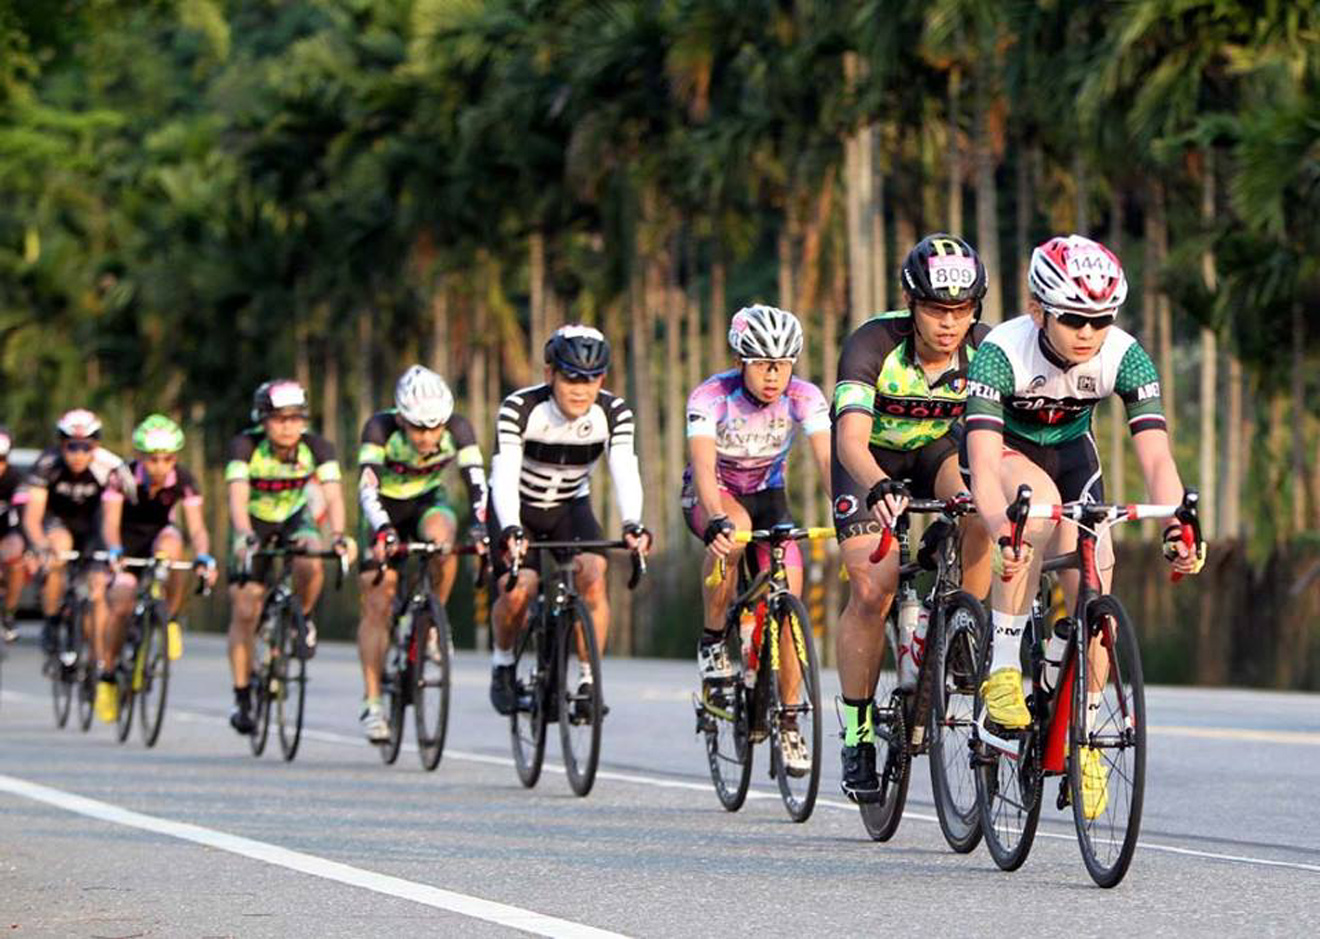 022018花東海灣盃自行車挑戰賽9日登場中華民國自行車騎士協會提供